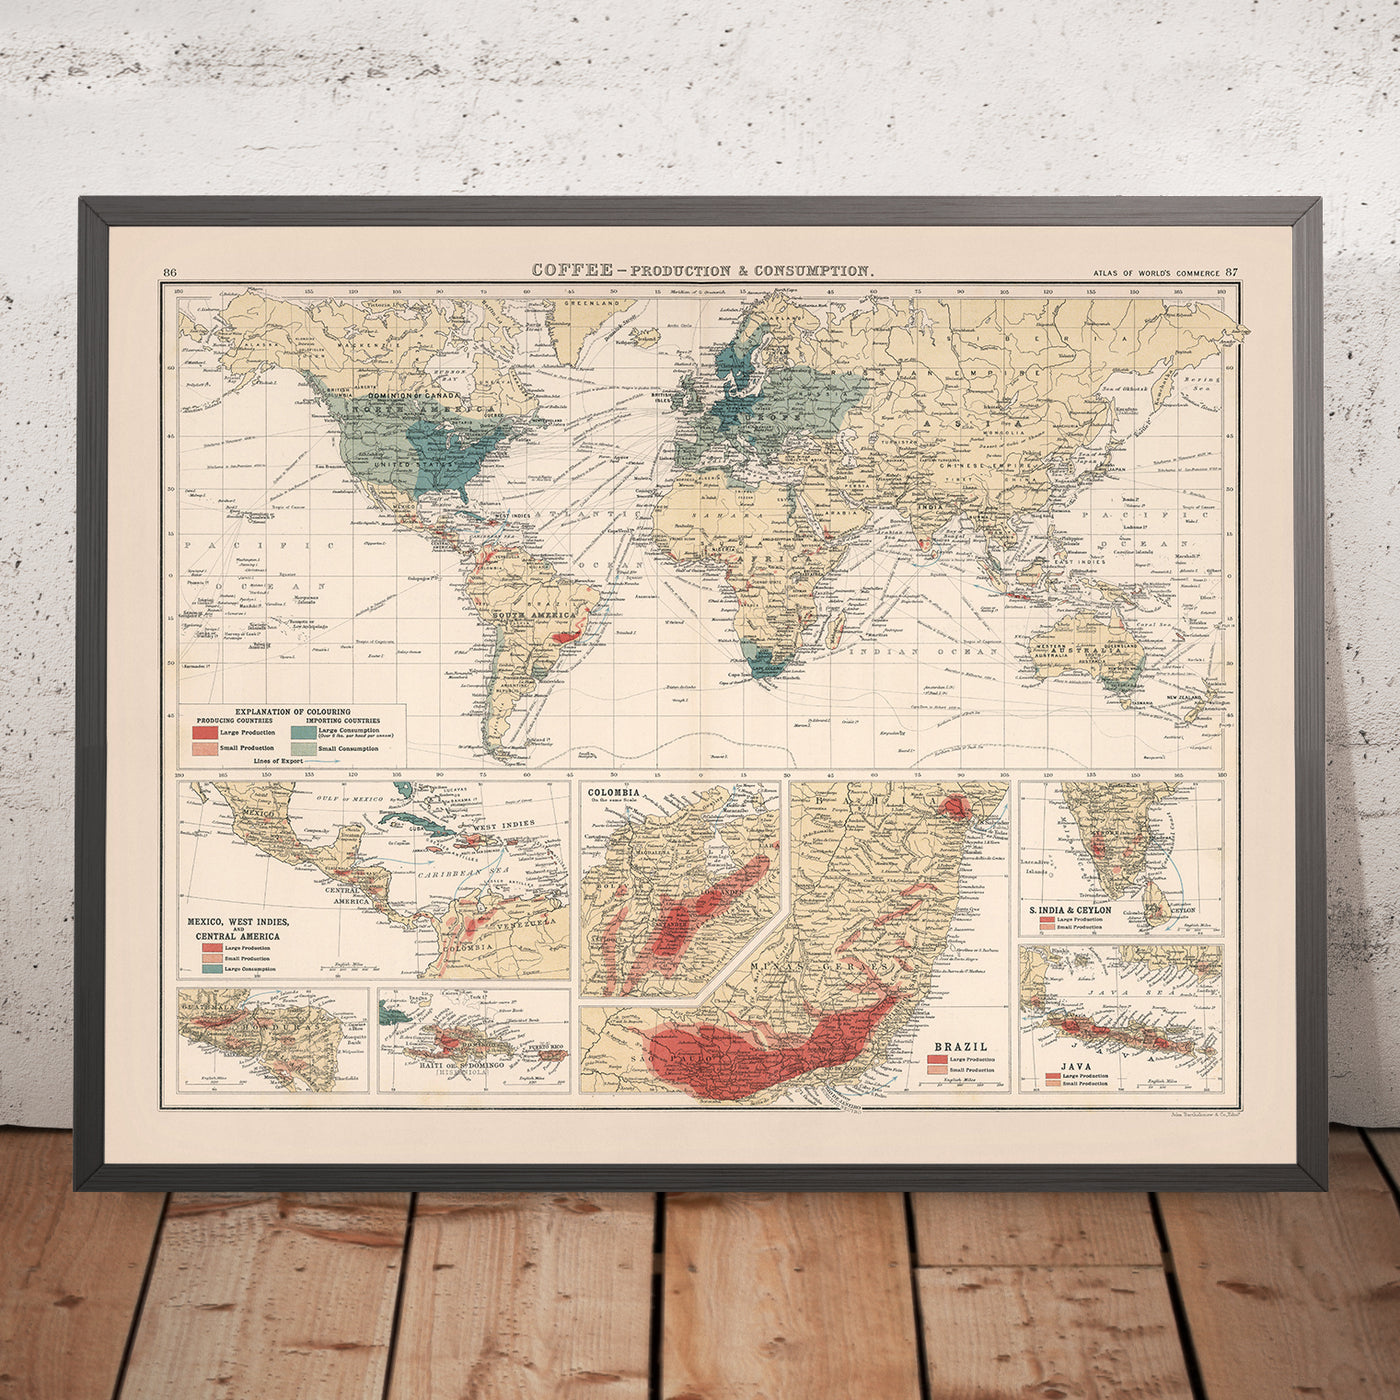 Mapa del Viejo Mundo Producción y consumo de café por Bartolomé, 1907: proyección de Mercator, rutas comerciales globales, anotaciones históricas.